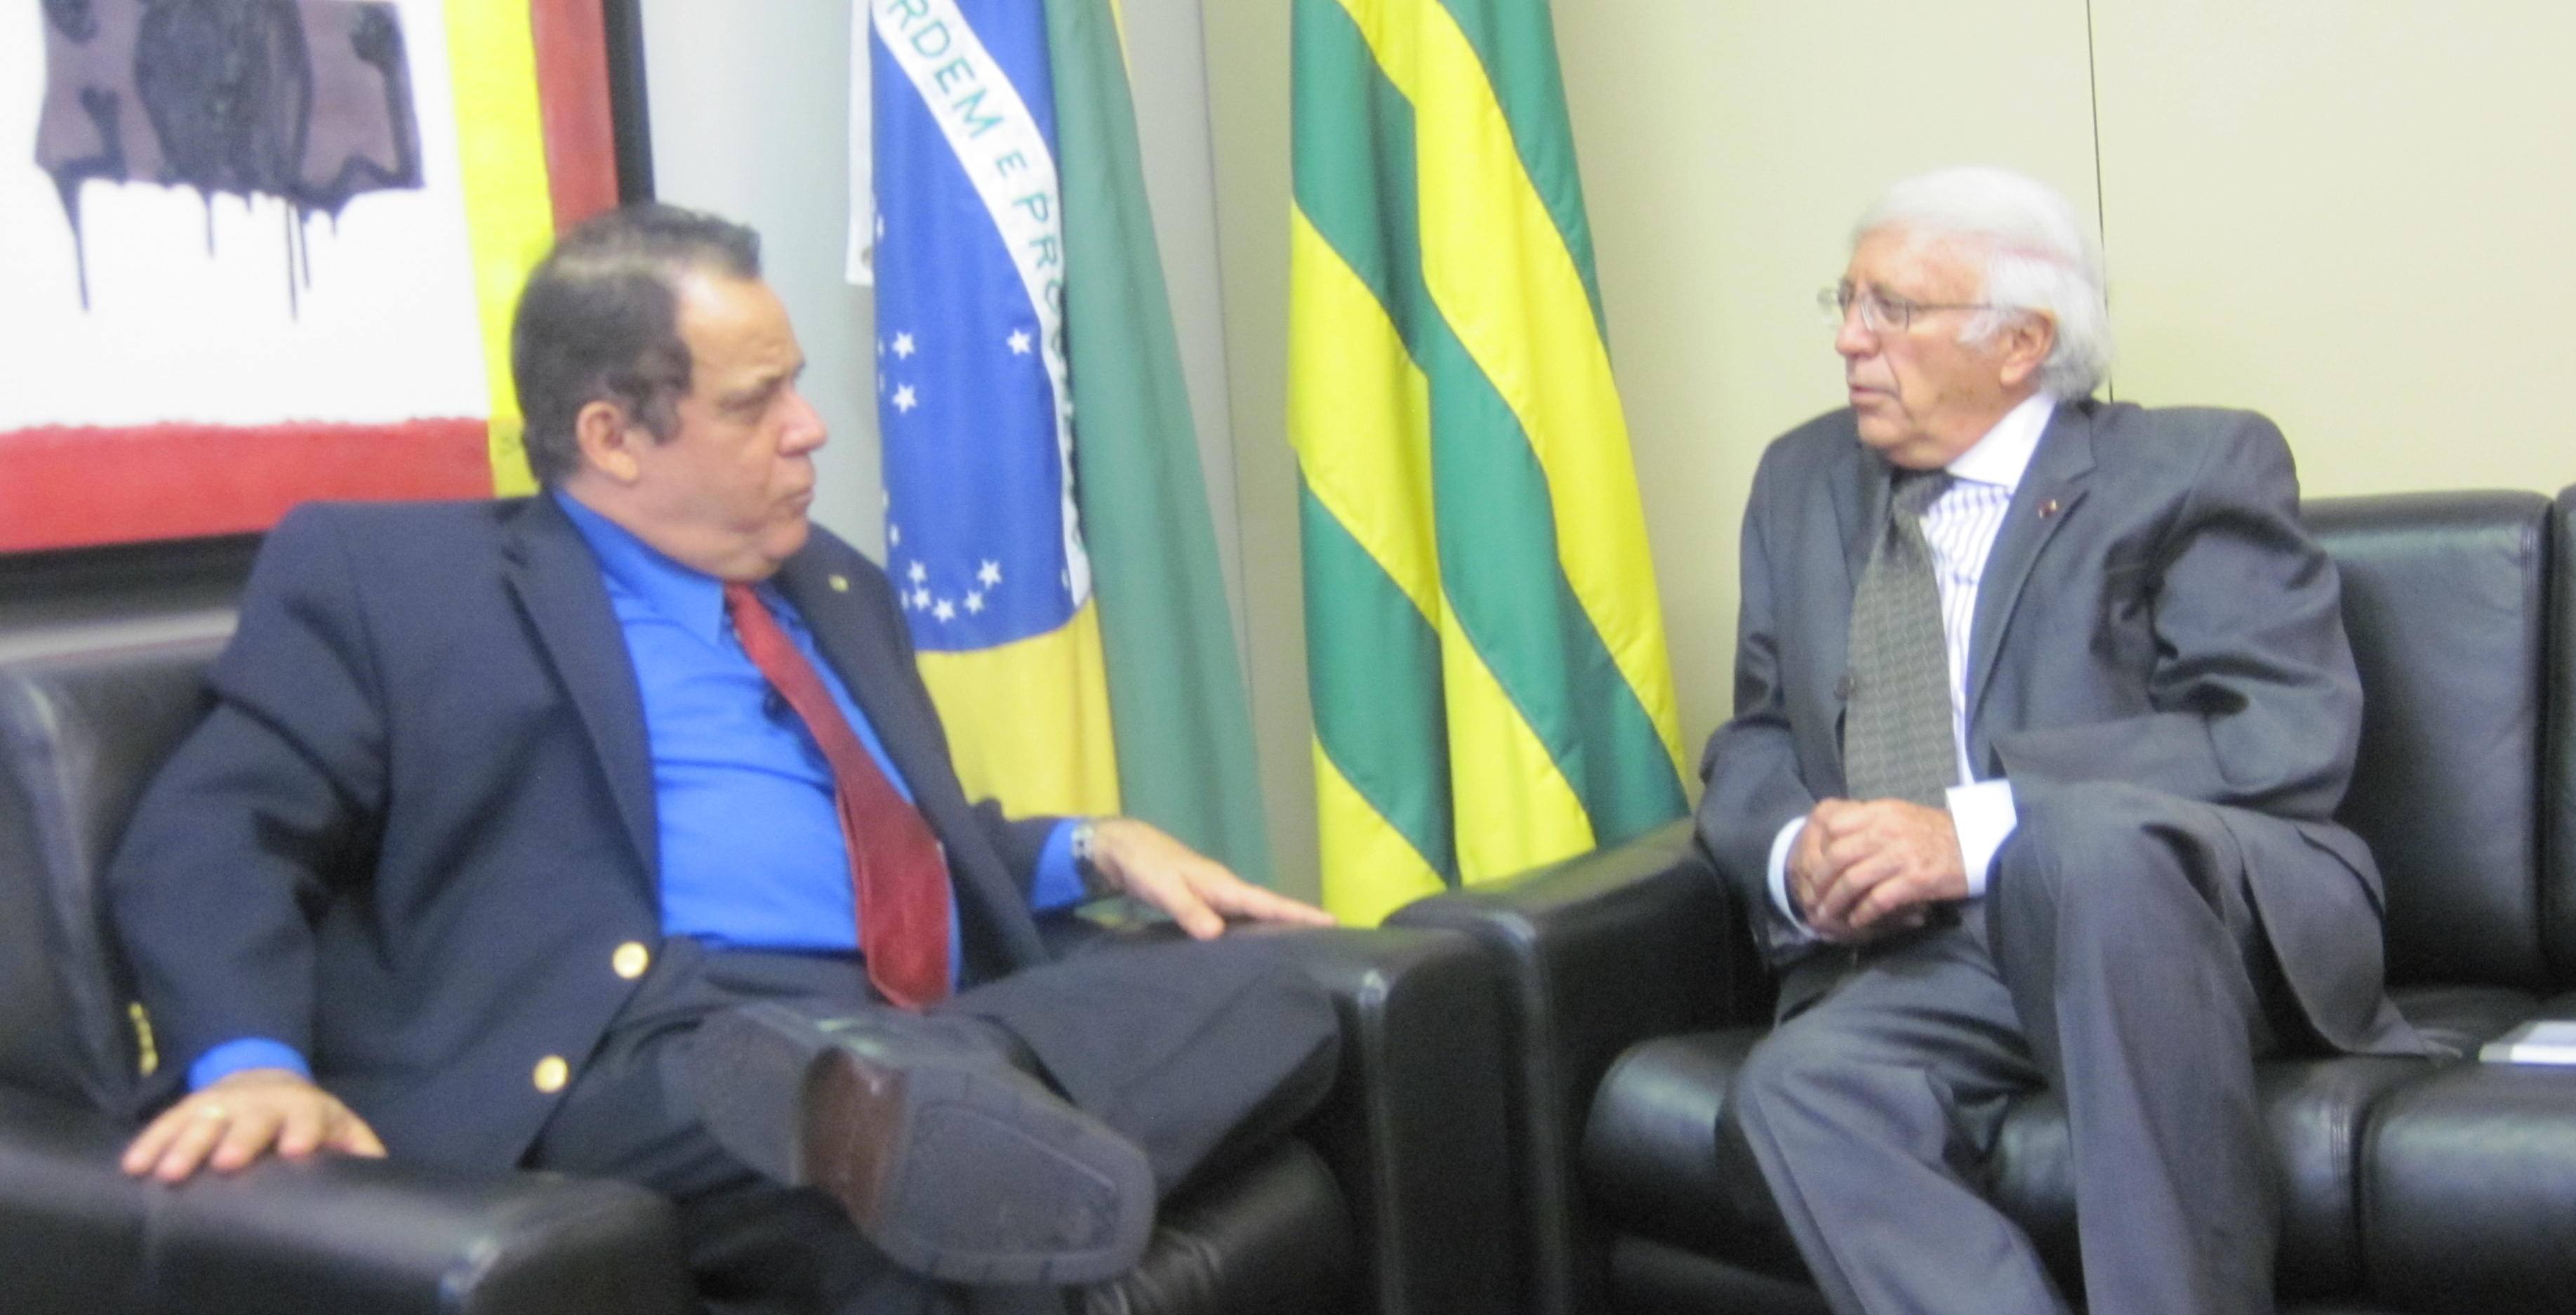 Embaixador do Equador faz visita de cortesia ao deputado Carlos Leréia